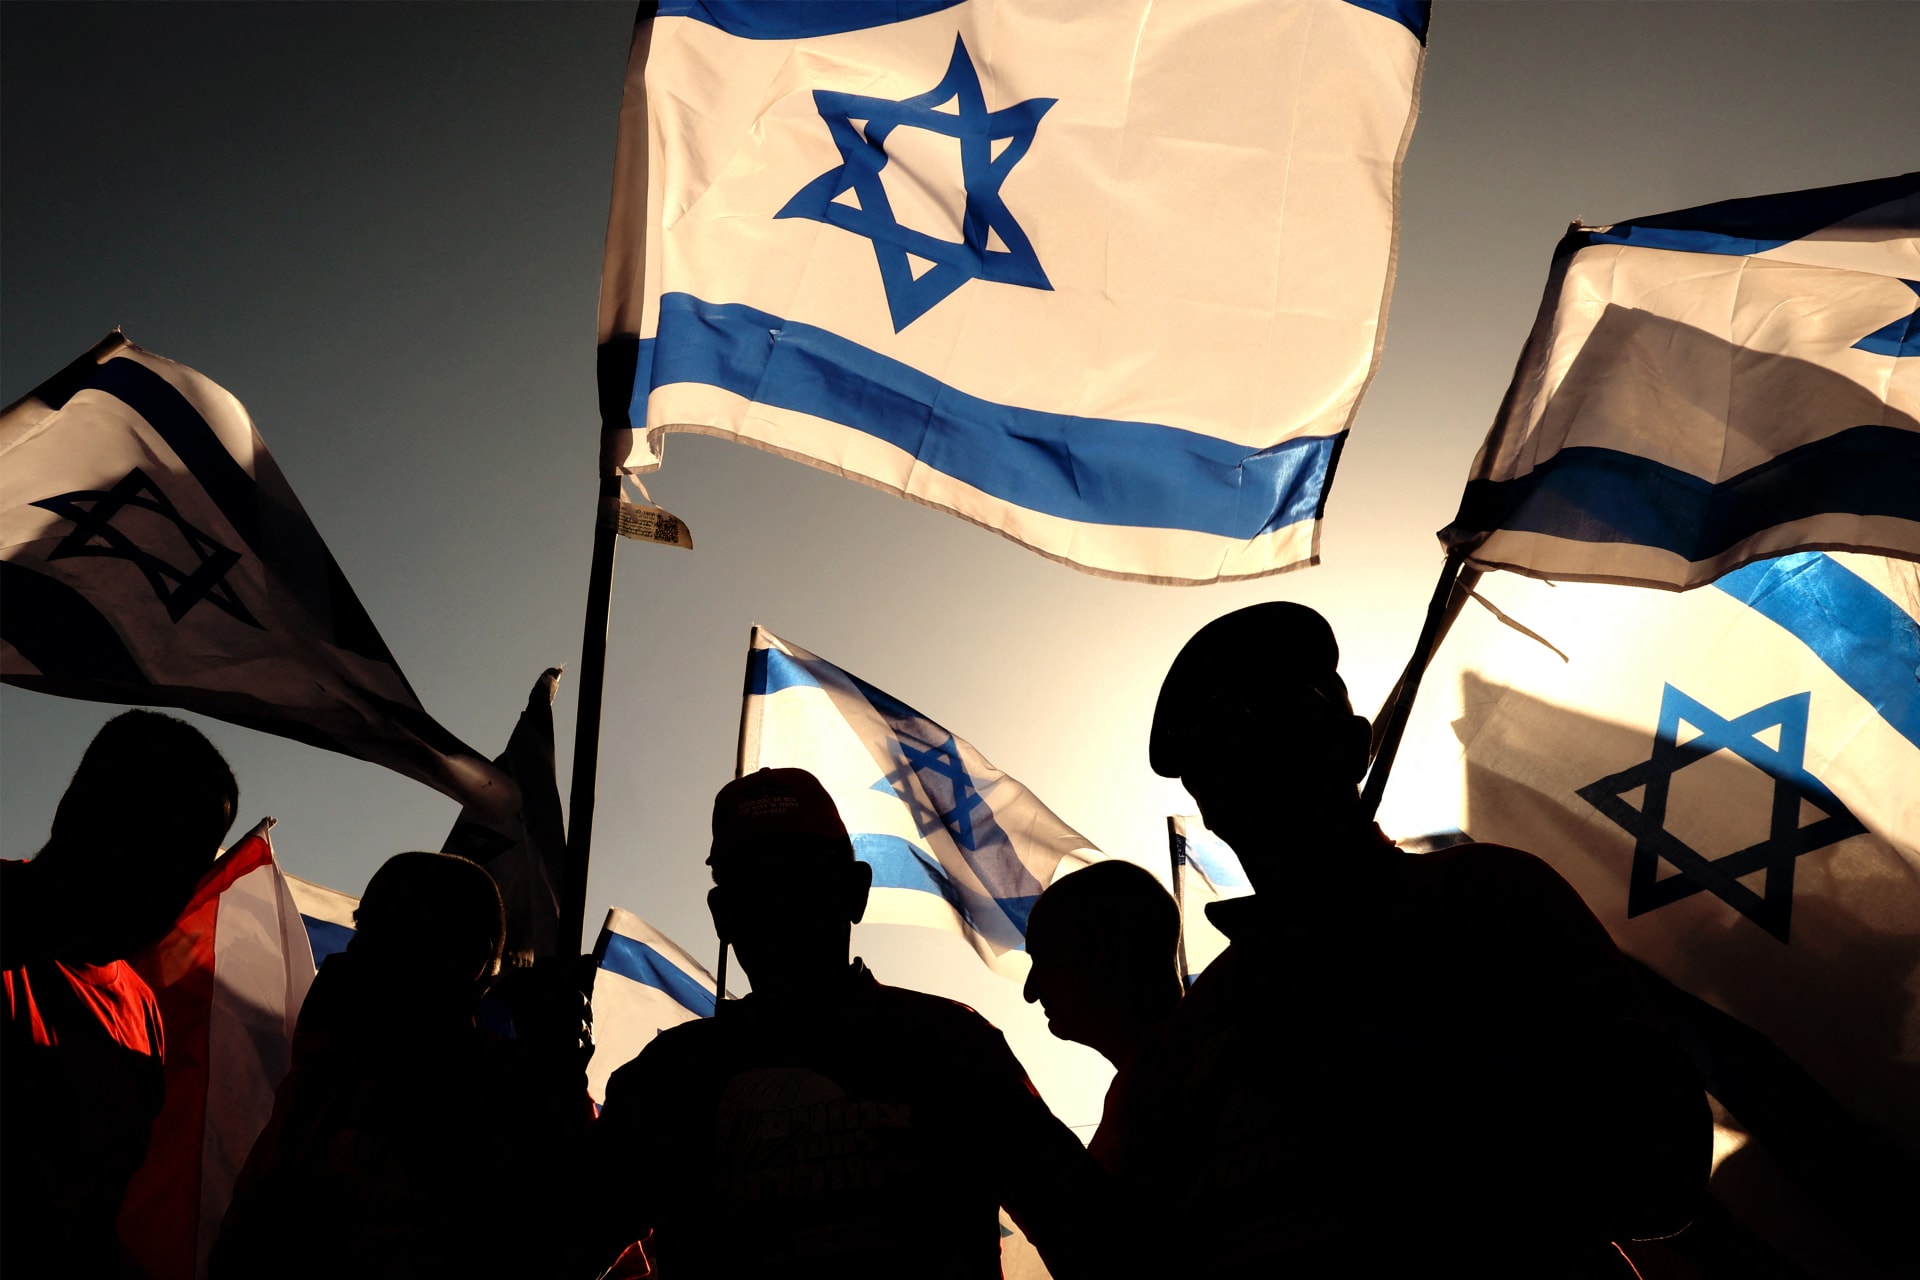 إسرائيل.. المحكمة العليا ترفض طلب الجيش لتأجيل التحقيق في فشل الاستخبارات بشأن 7 اكتوبر